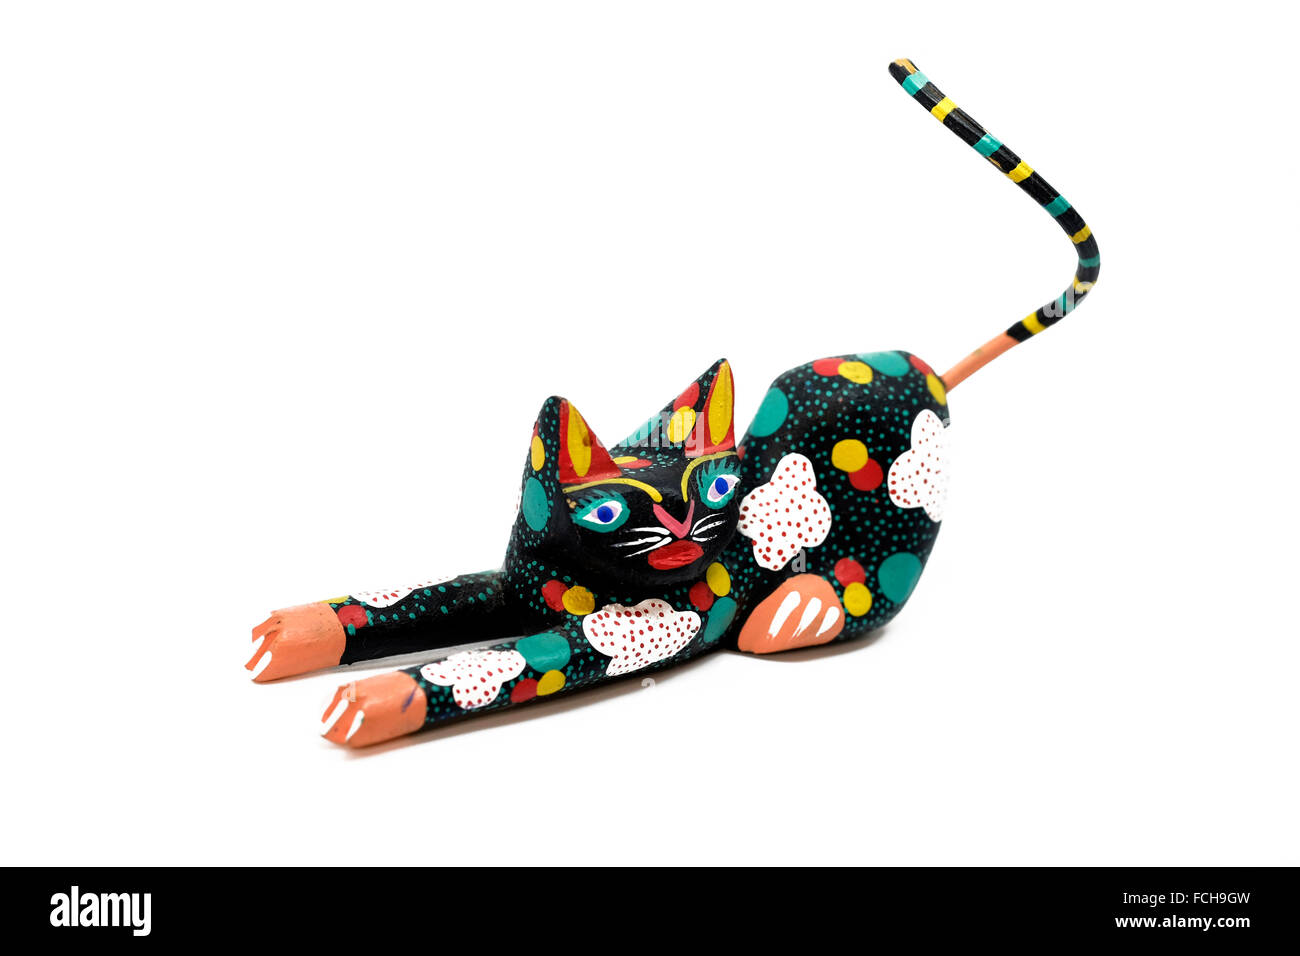 Figurine chat sculpté mexicaine ,très stylisé et coloré, cut-out sur un fond blanc Banque D'Images